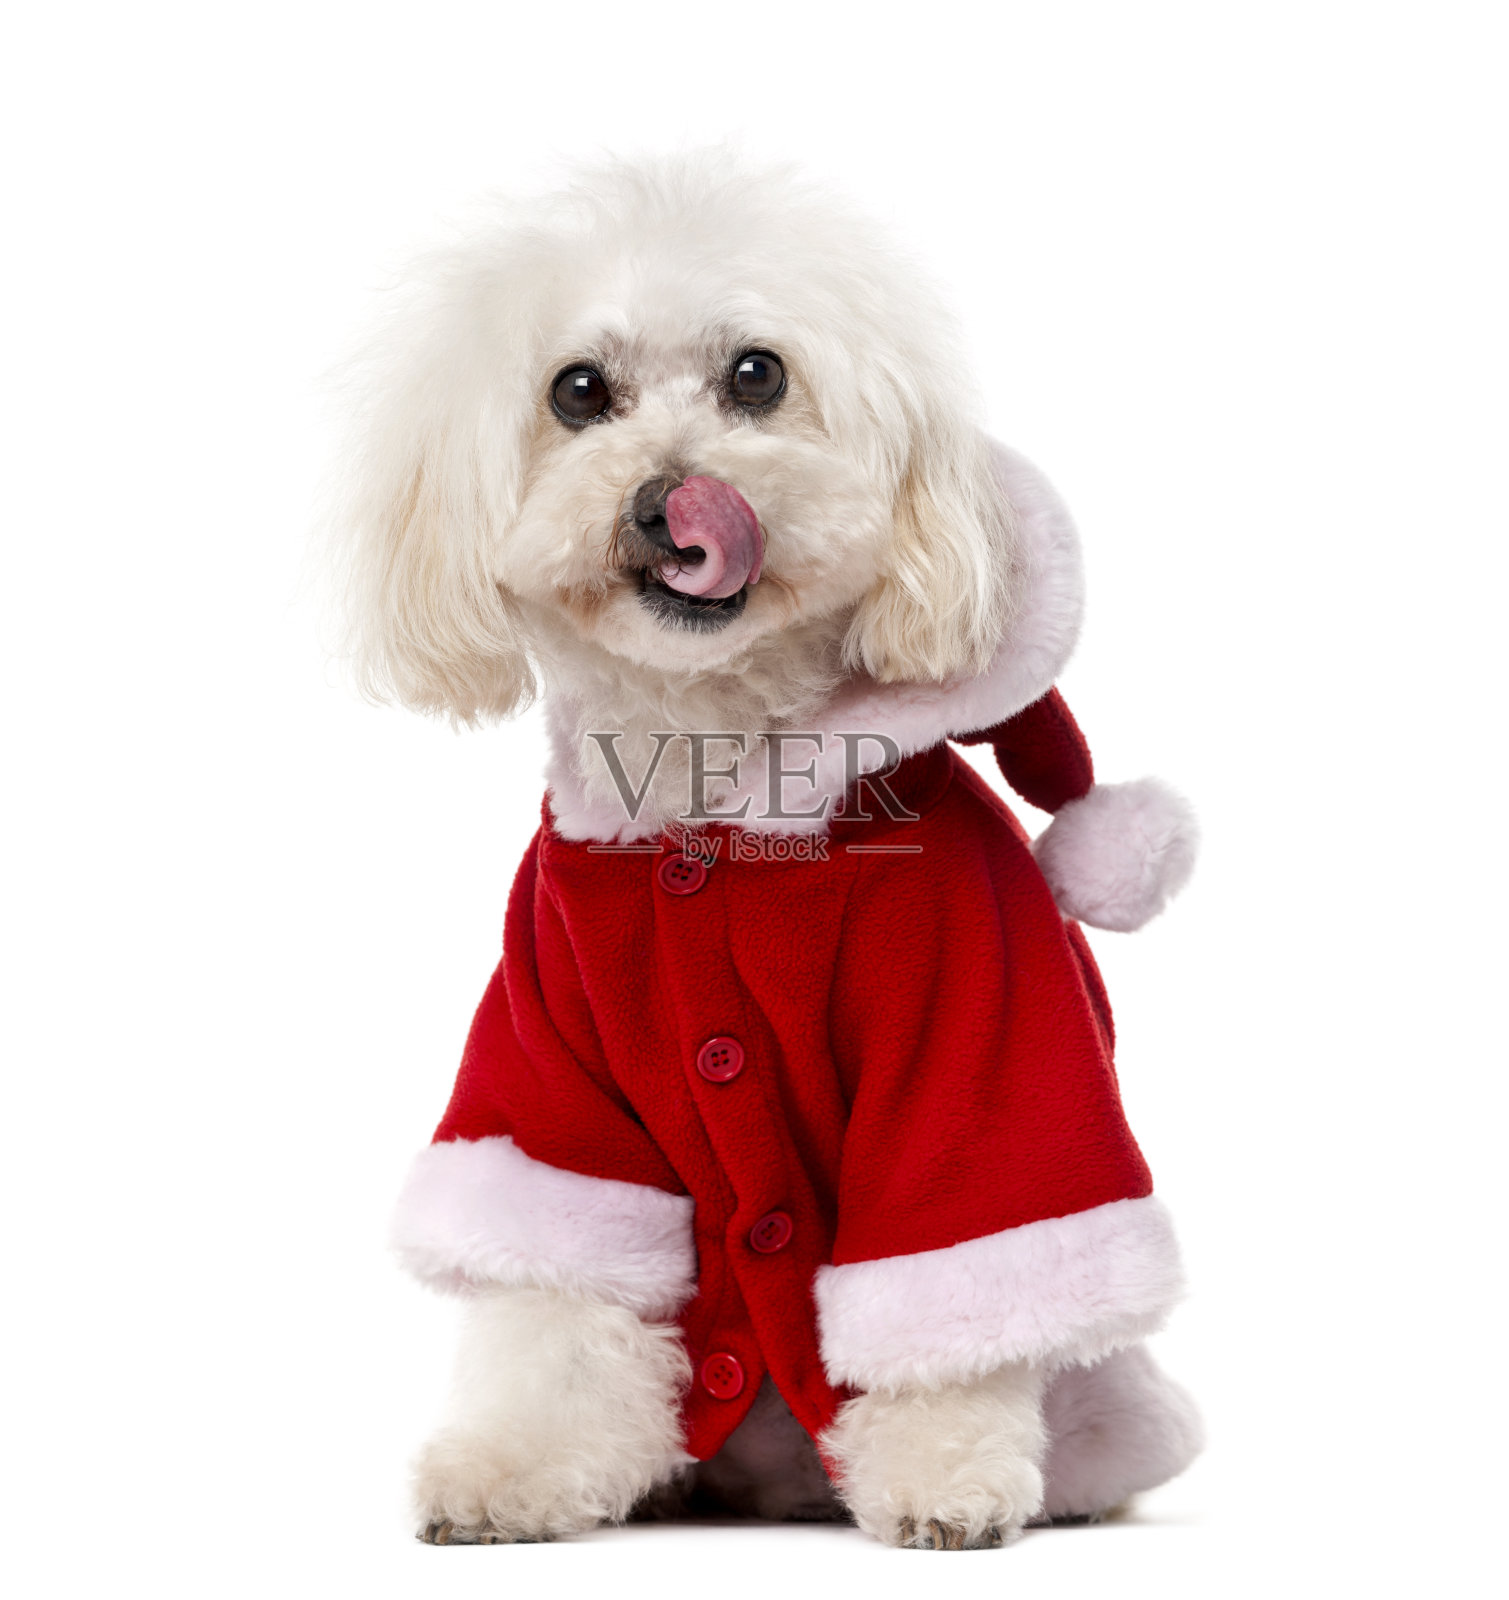 穿着圣诞外套的贵宾犬(11岁)照片摄影图片